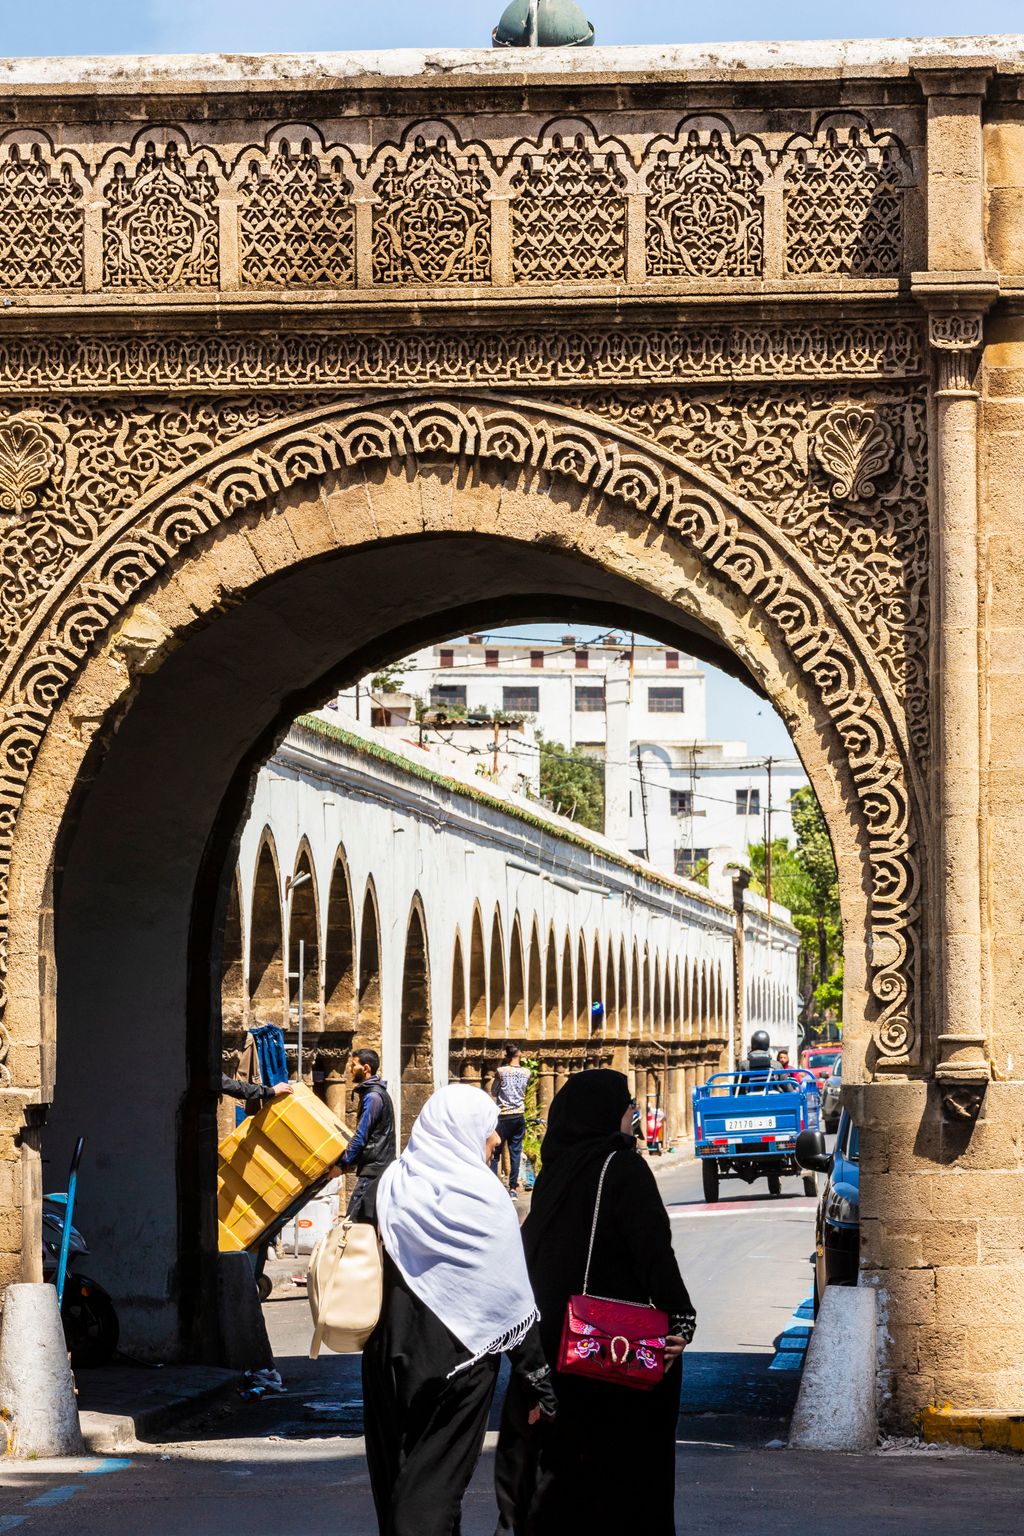 Casablanca modern város, régi történelemmel.